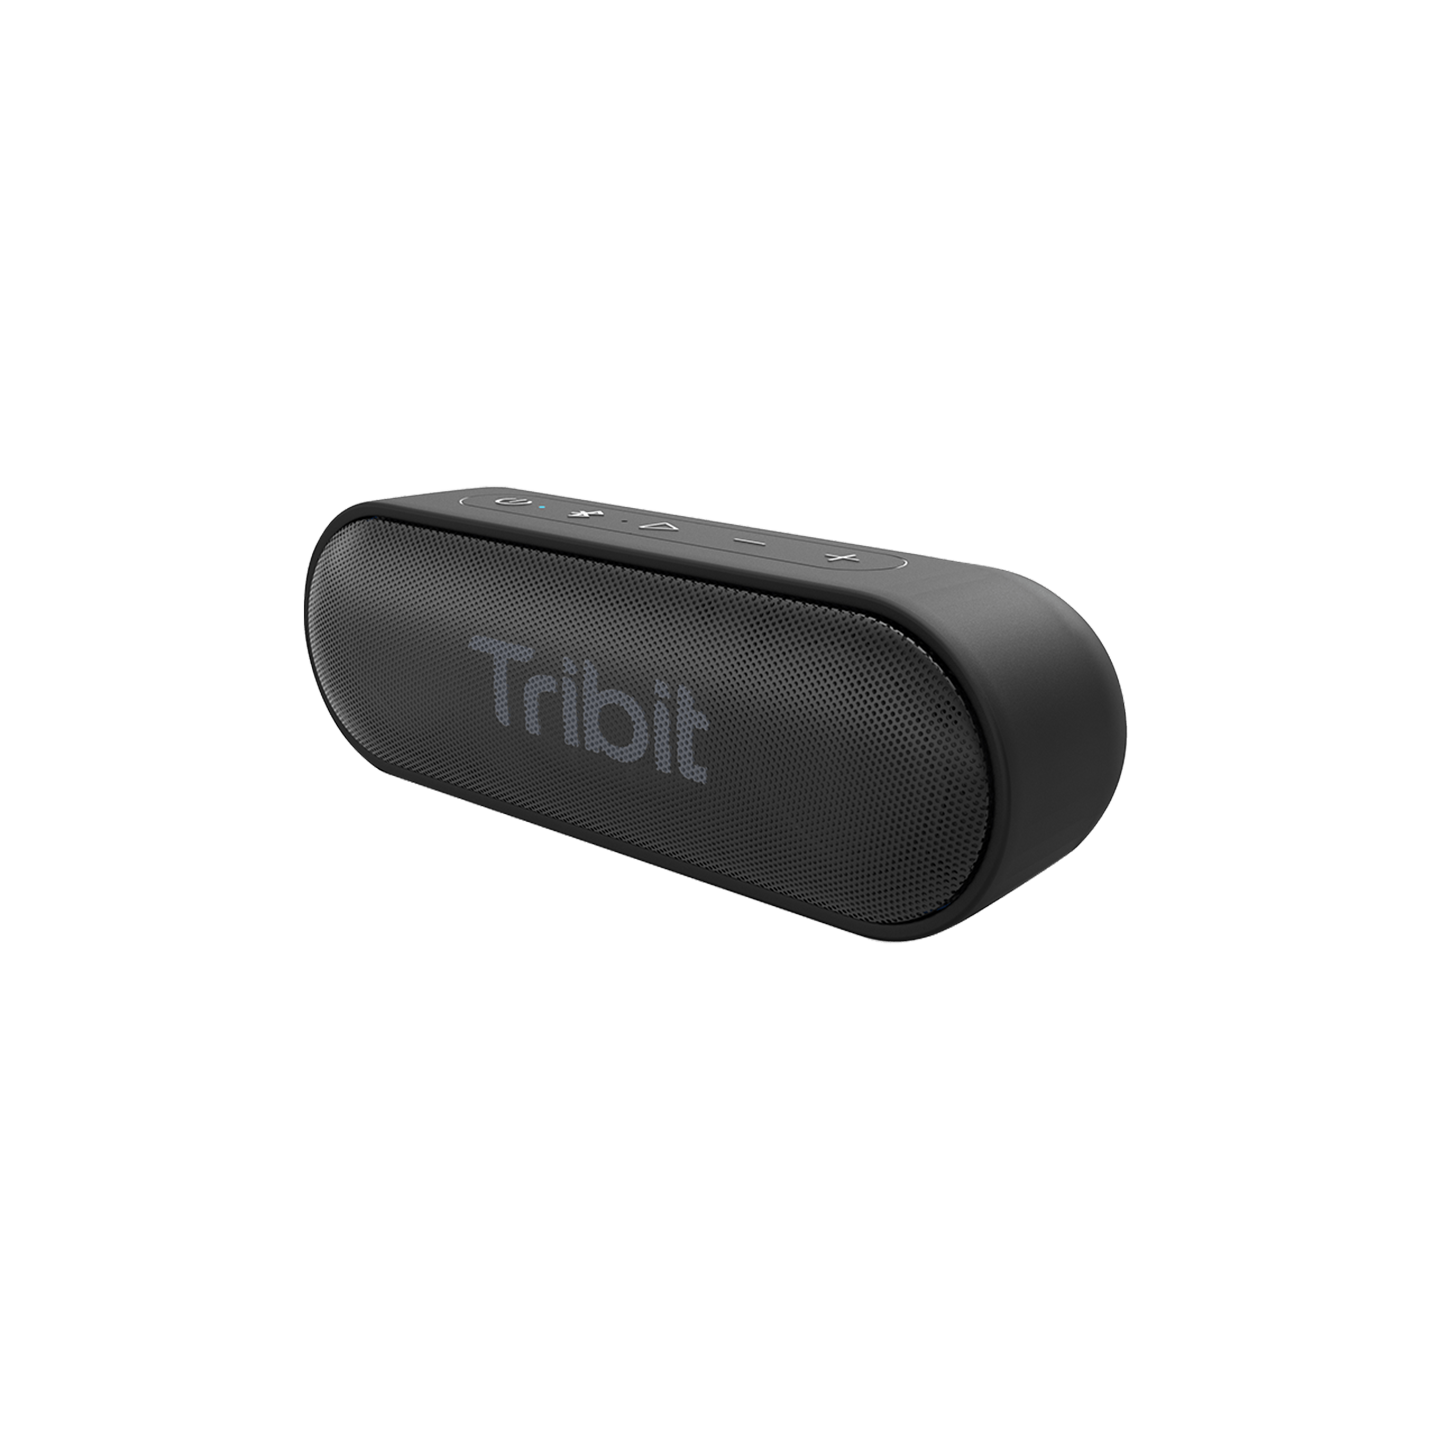 Tribit XSound Go Bluetooth Speaker